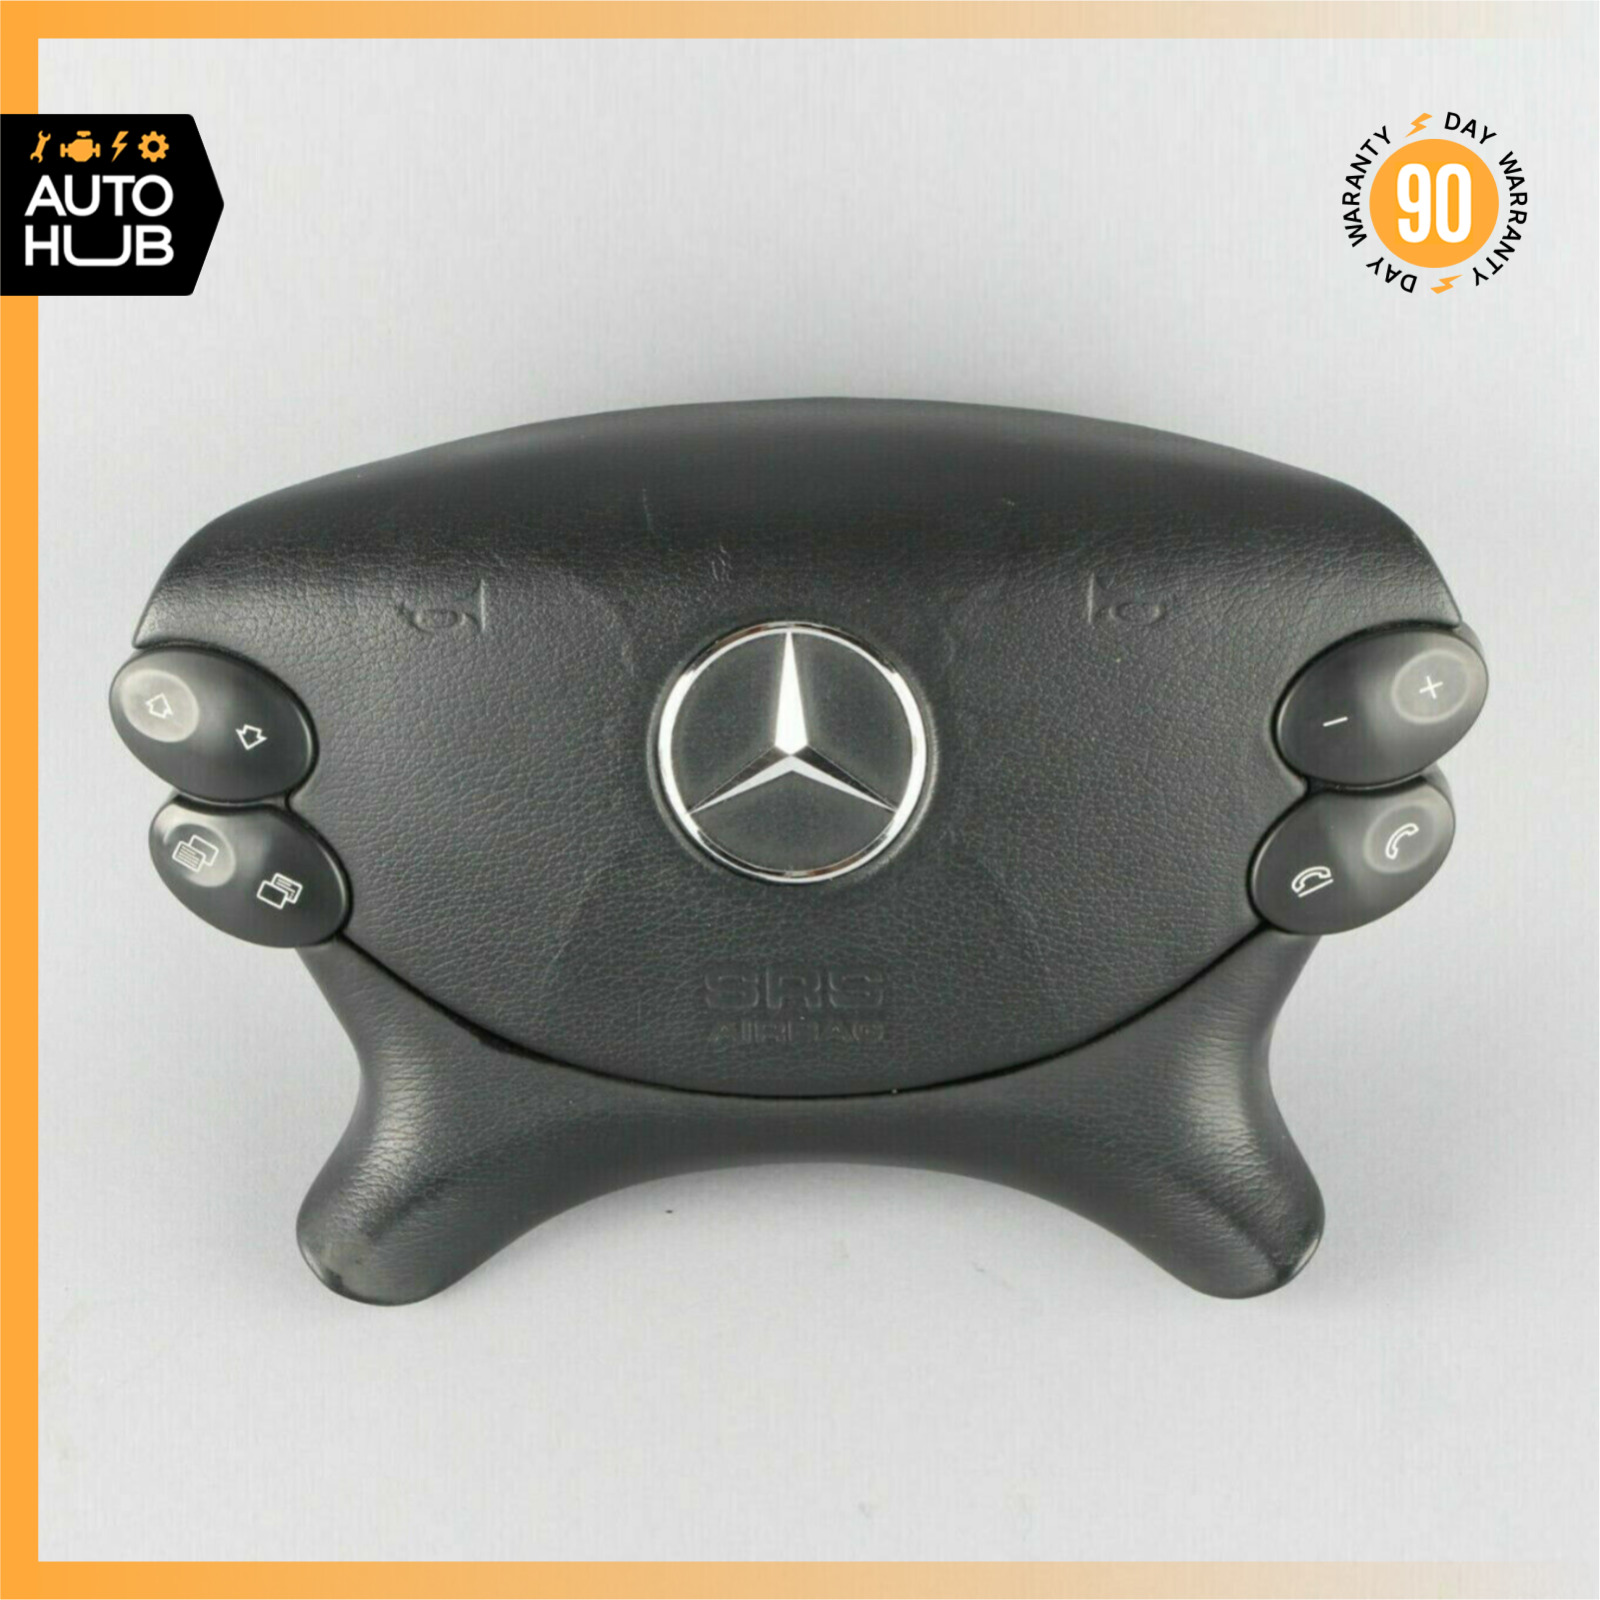 Mercedes W219 CLS500 E350 SL500 Steering Wheel Airbag Air Bag Black OEM